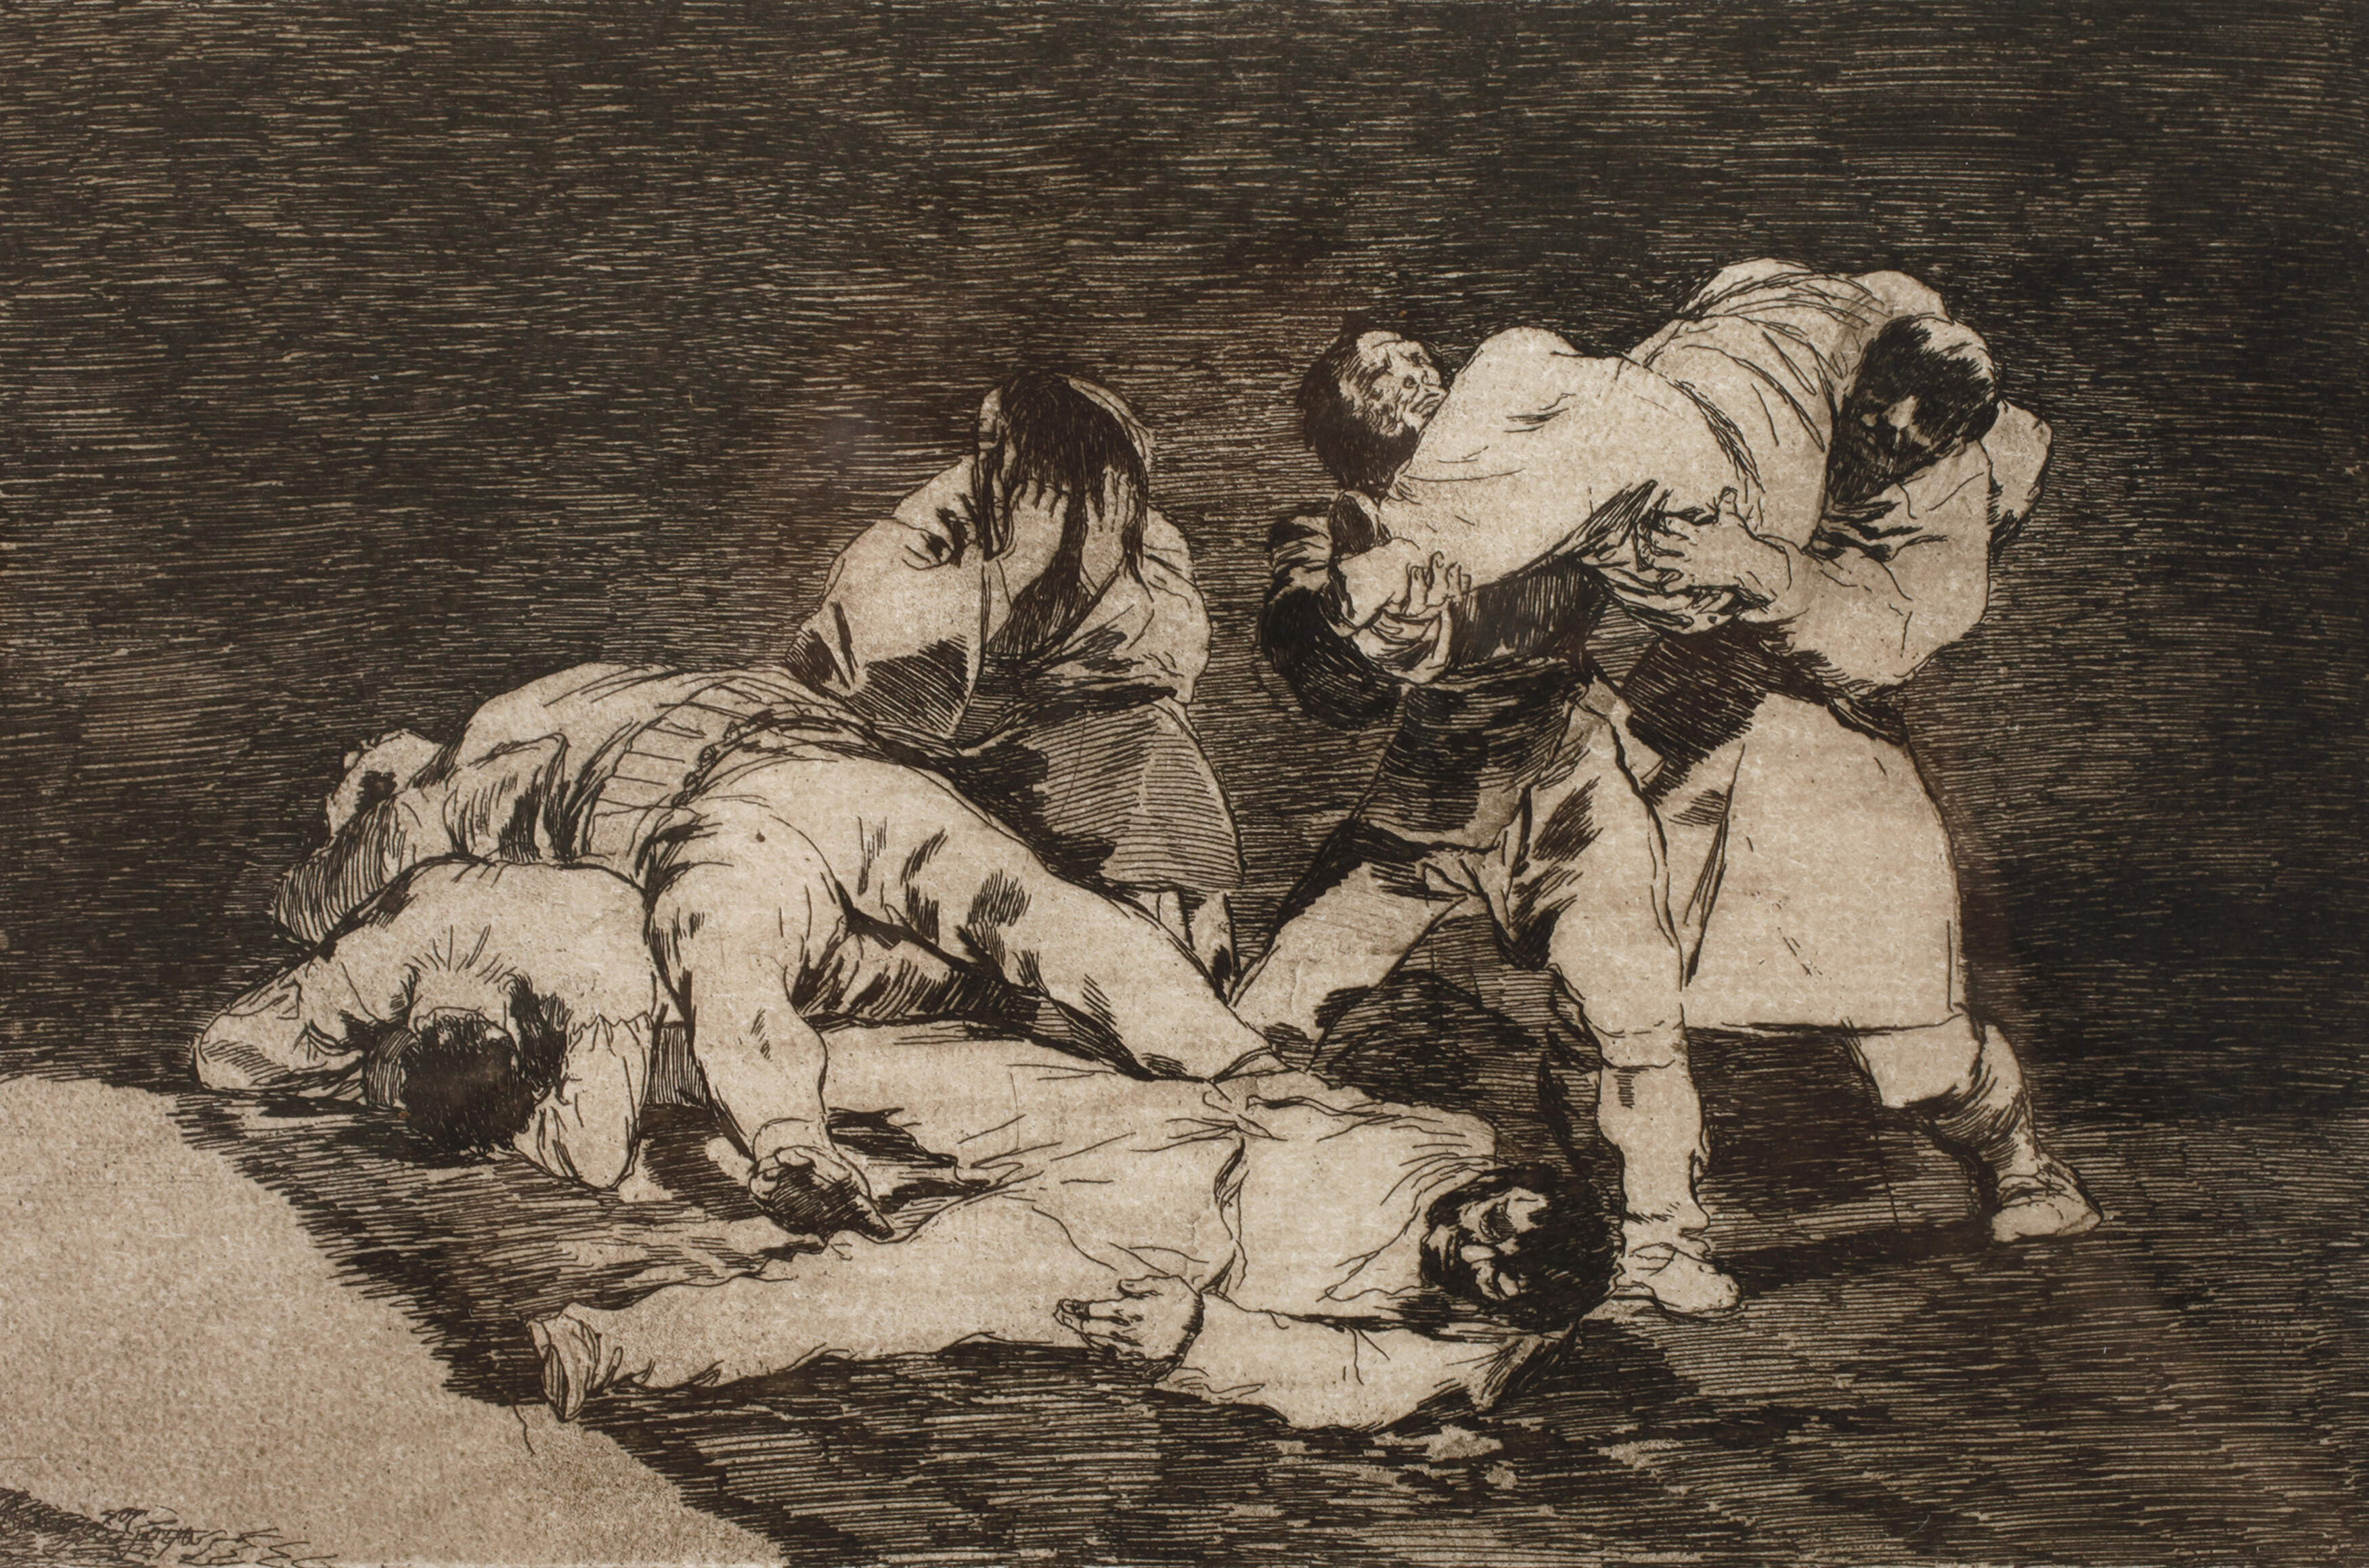 Francisco de Goya, "Será lo mismo"